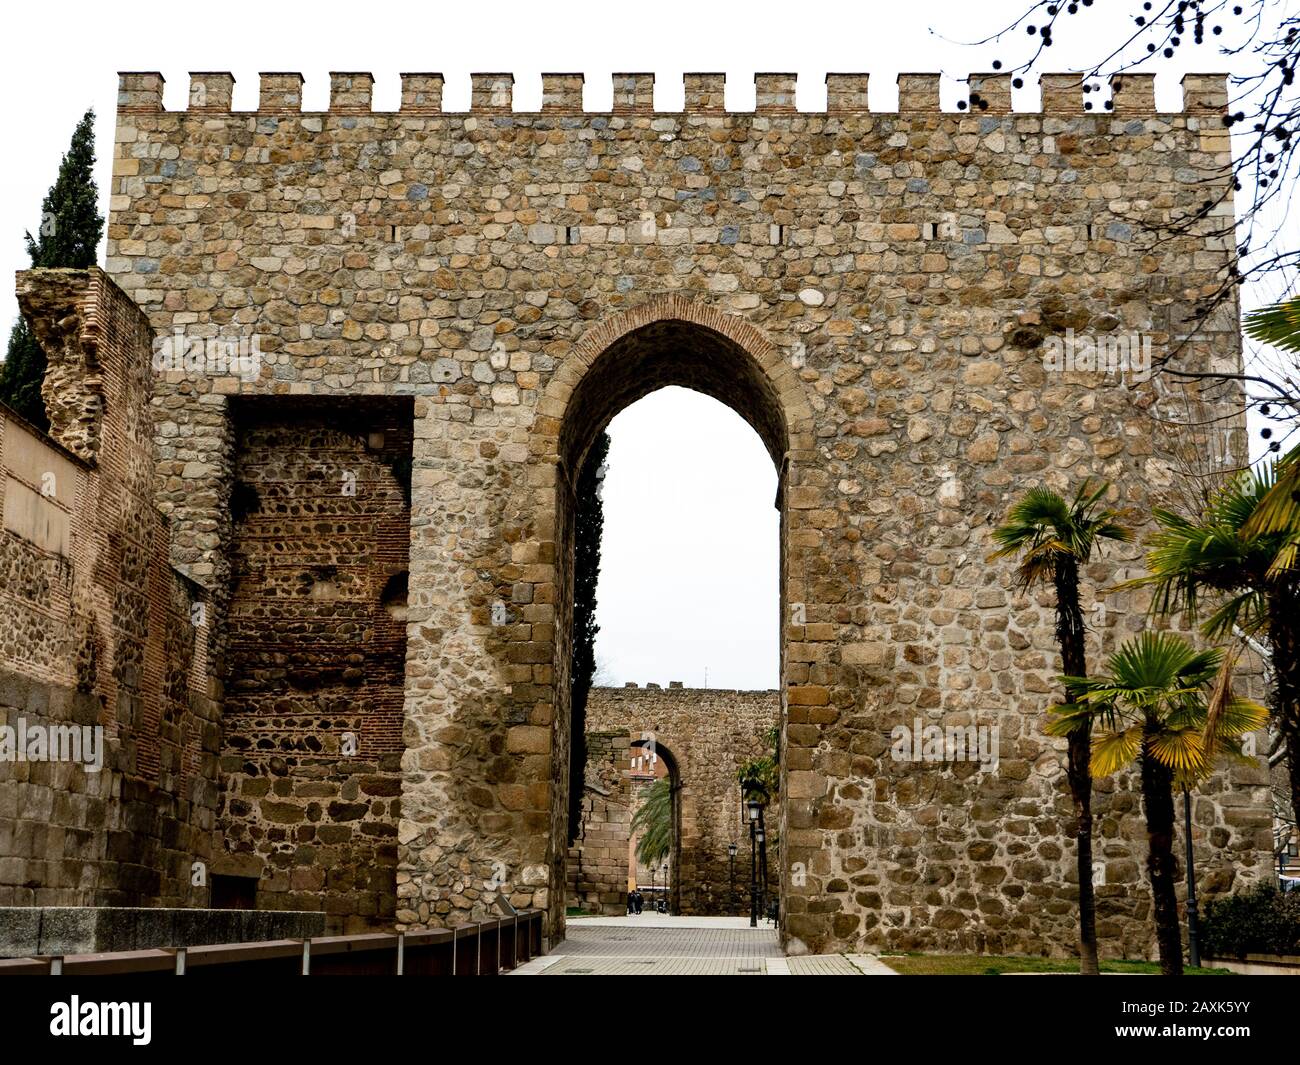 Albarran ancienne tour des remparts de Talavera de la Reina. Les remparts actuels sont datés du IX siècle mais ont été construits sur de vieux remparts romains. Banque D'Images